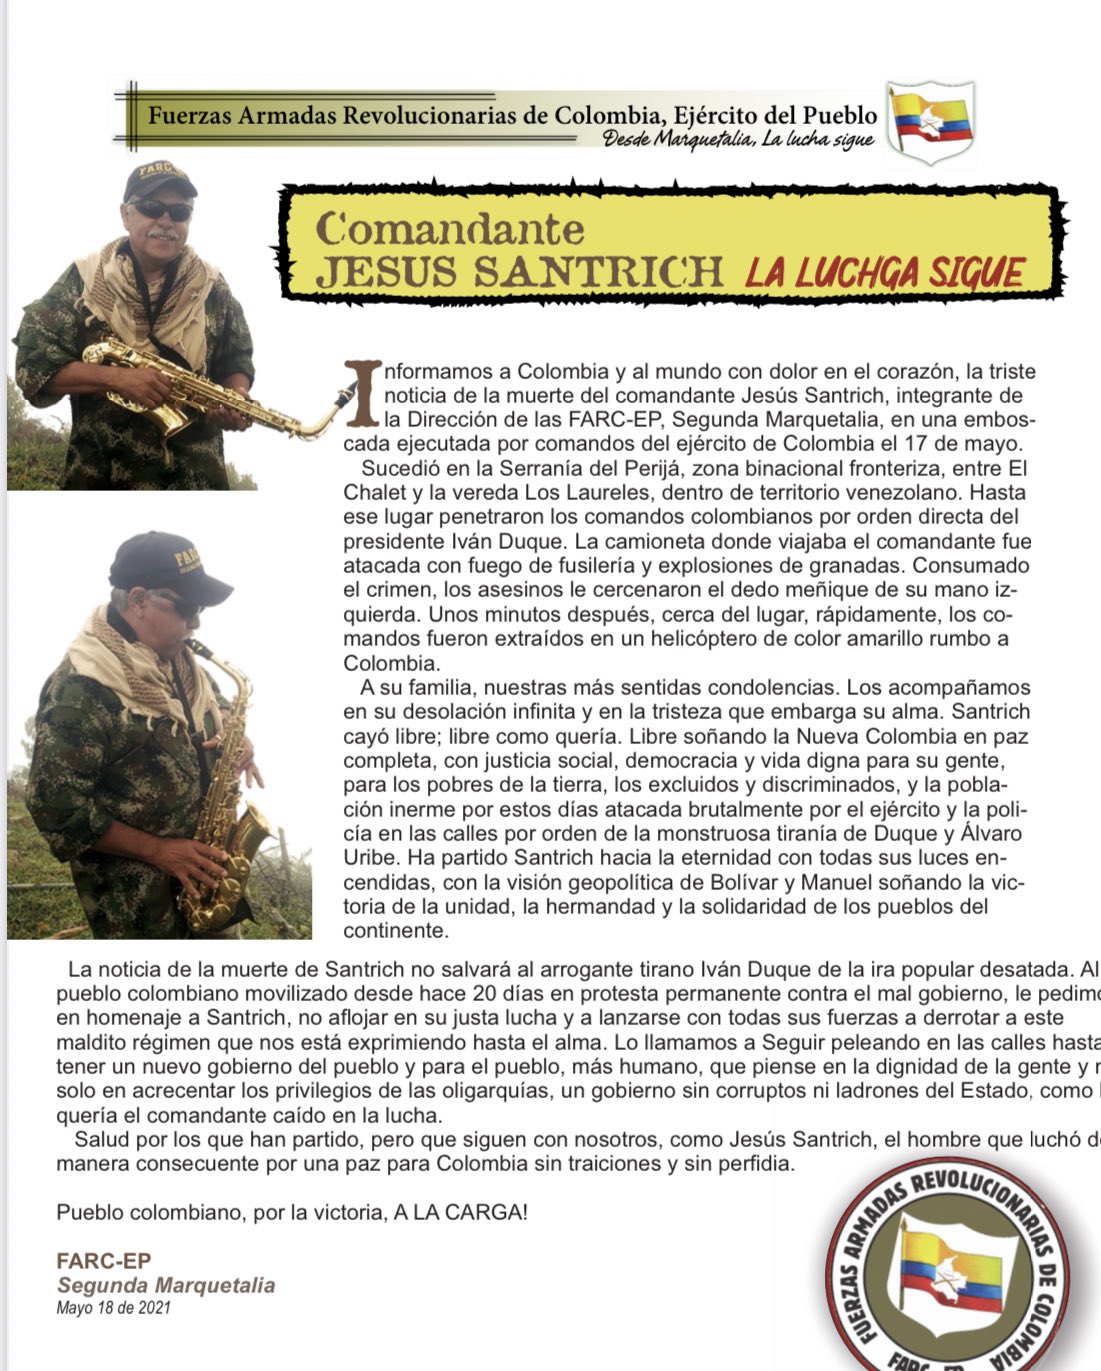 Conflicto de Baja Intensidad en la Frontera Colombo-Venezolana - Página 20 E1tf2wkWQAAMJY8?format=jpg&name=large